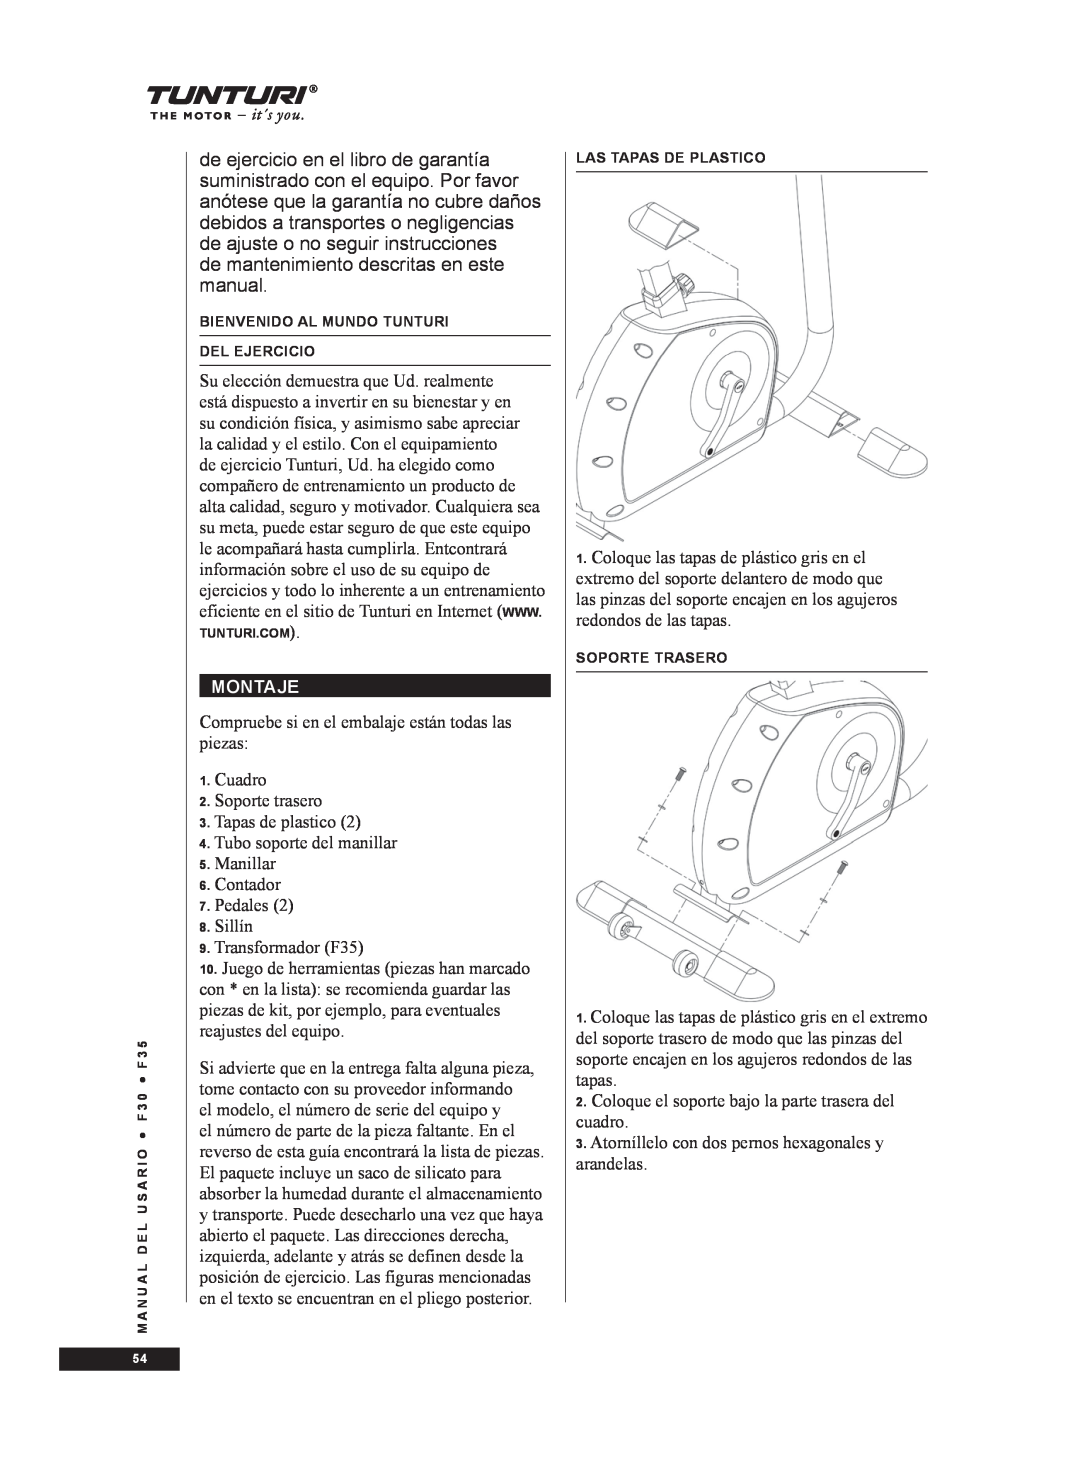 Tunturi F35, F30 owner manual de mantenimiento descritas en este manual, Montaje 